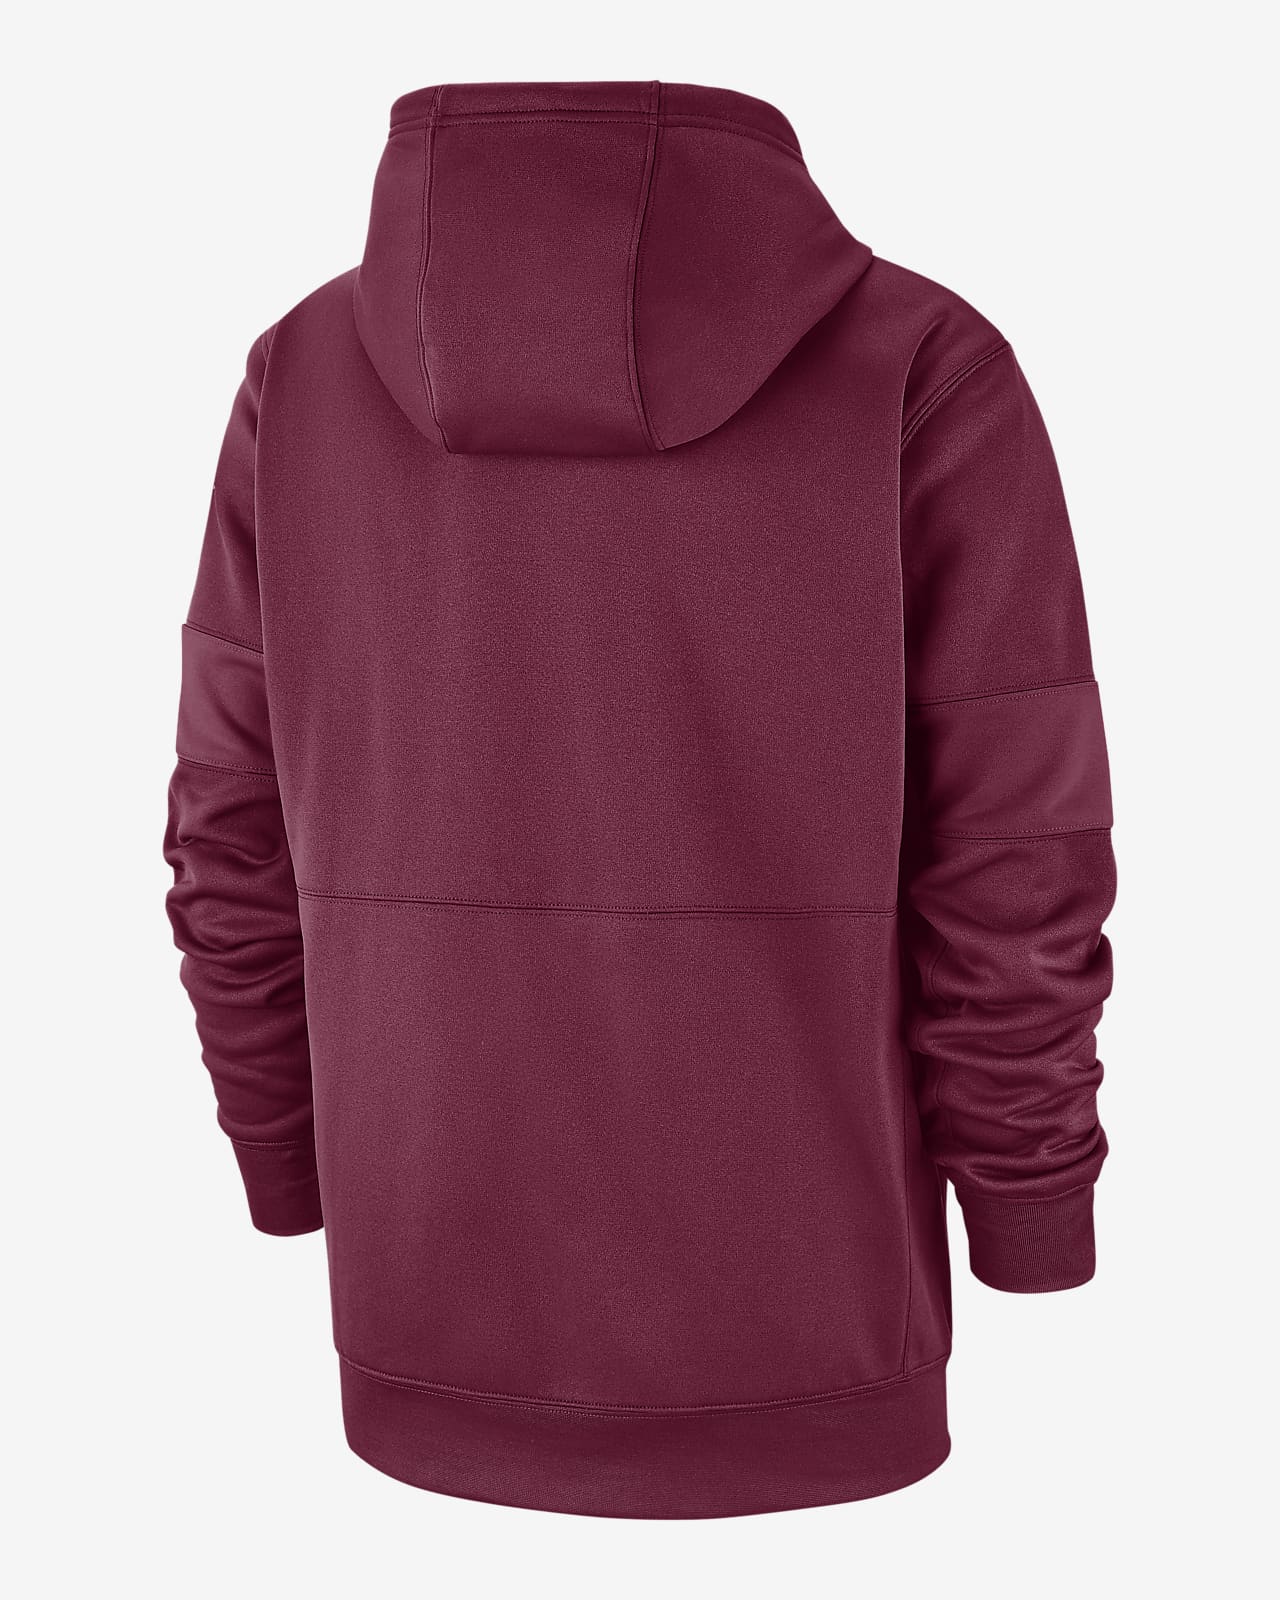 nike maroon hoodie mens